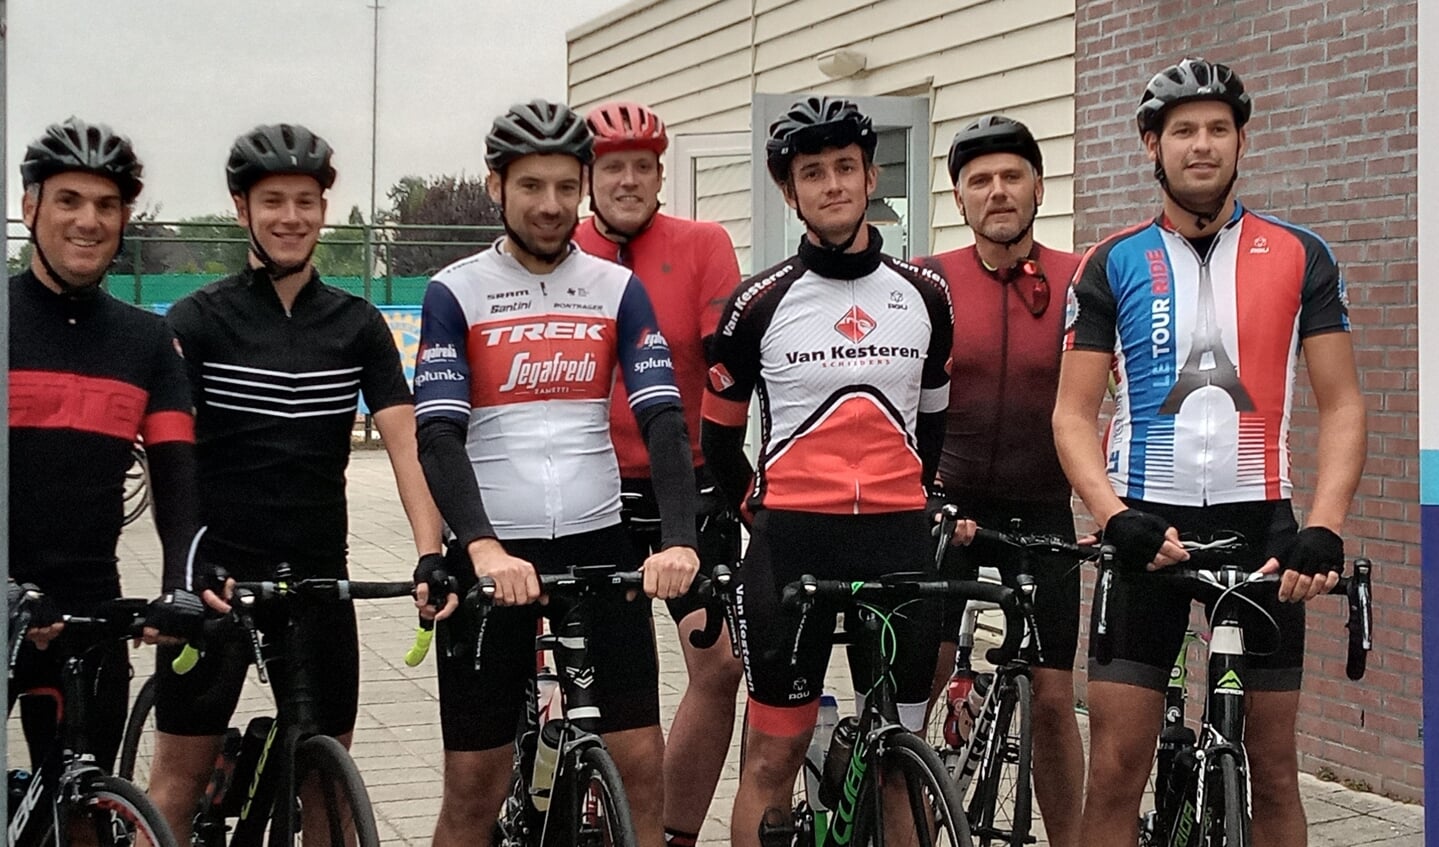 Team wielrenners uit Katwijk